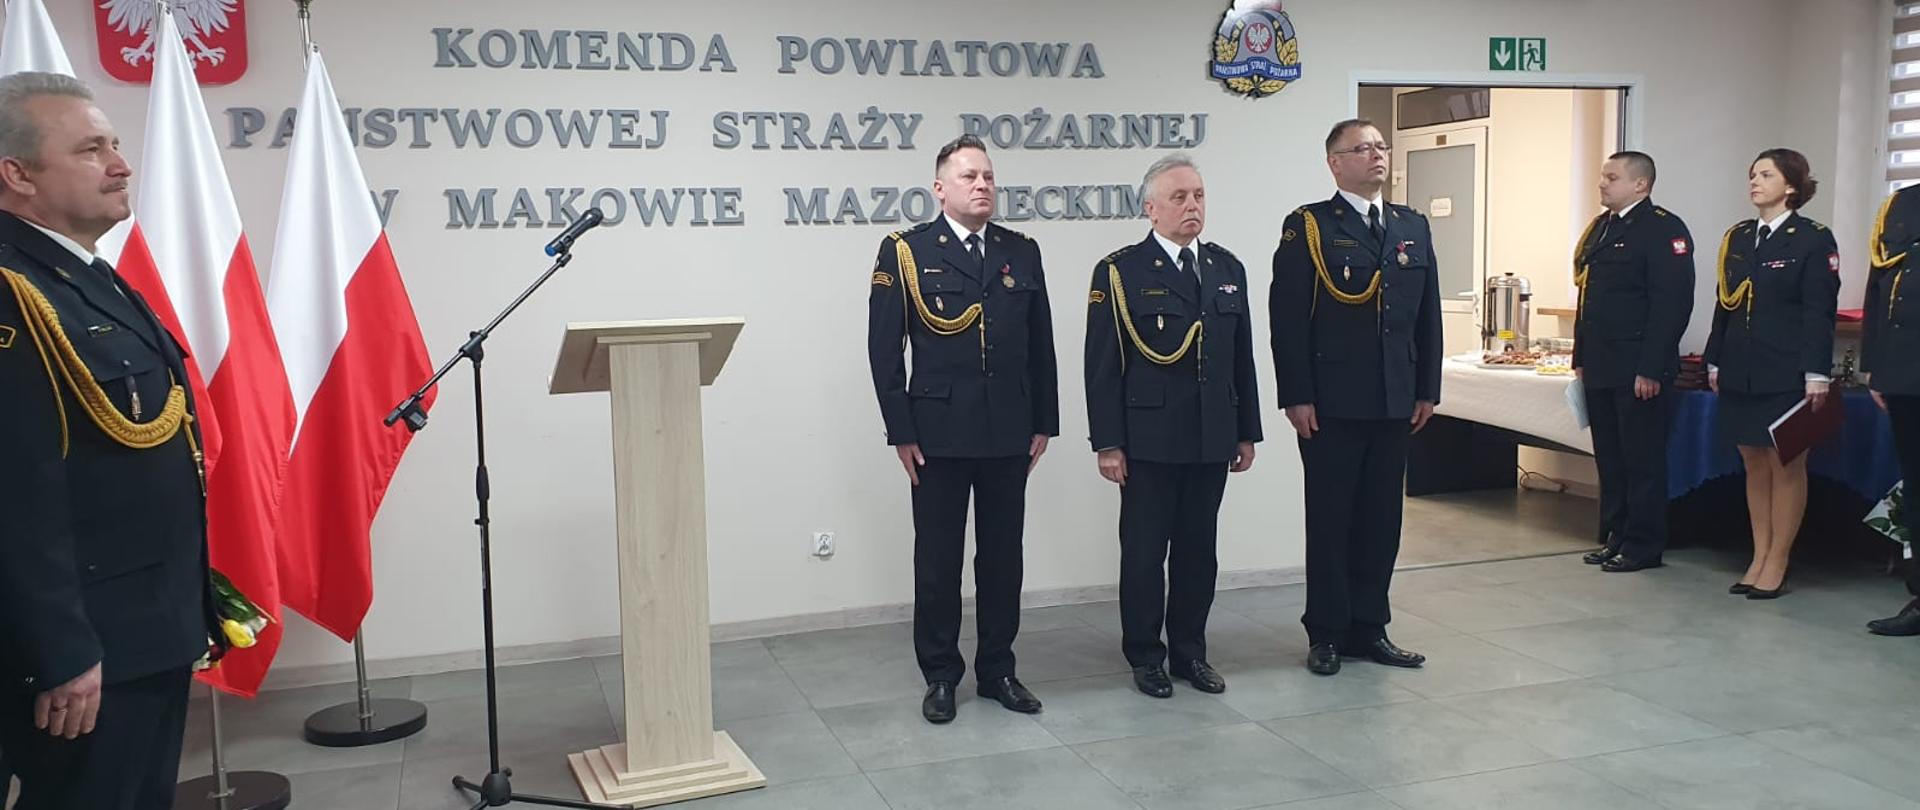 Mazowiecki Komendant PSP oraz Zdający i Przejmujący obowiązki Komendanta Powiatowego stoją na świetlicy podczas uroczystości.